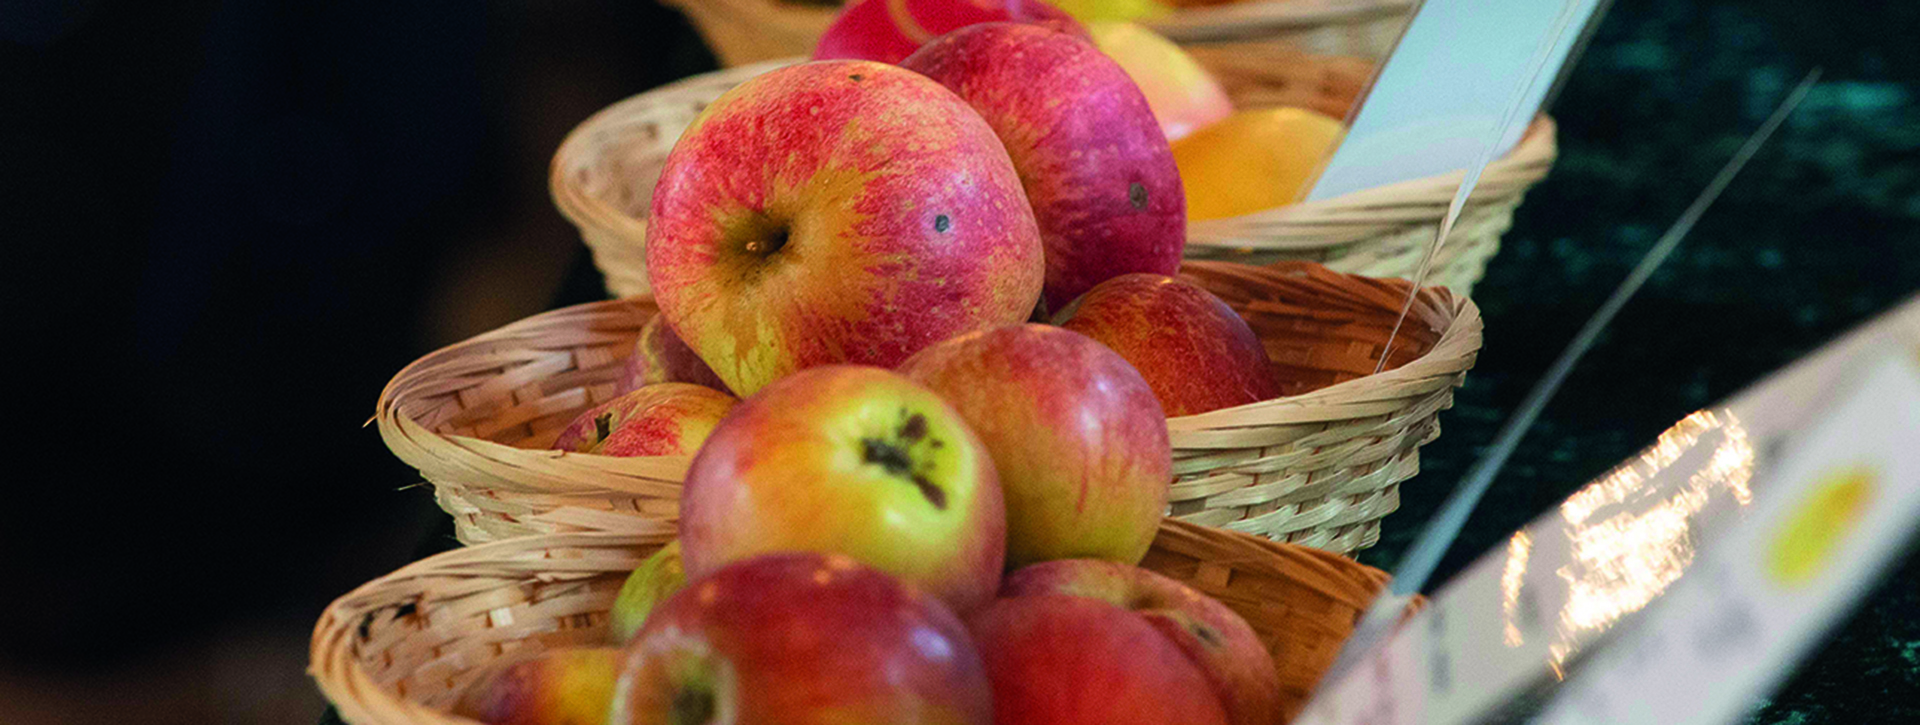 Viele Äpfel in Körben